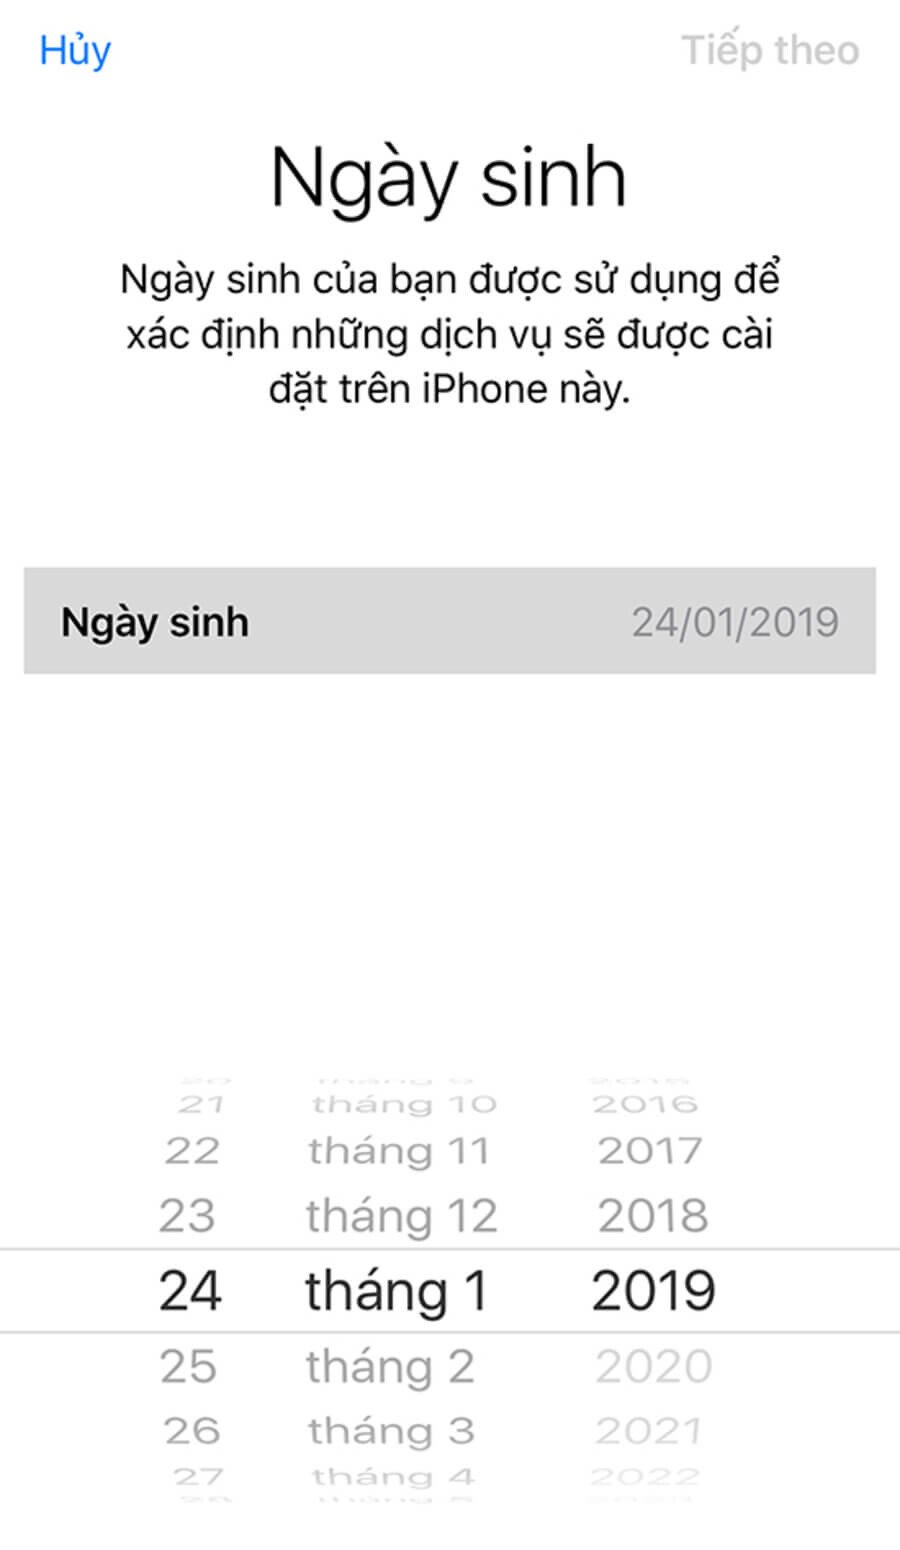 Hướng dẫn tạo tài khoản Apple ID trong 3 phút bằng iPhone - Hình 2